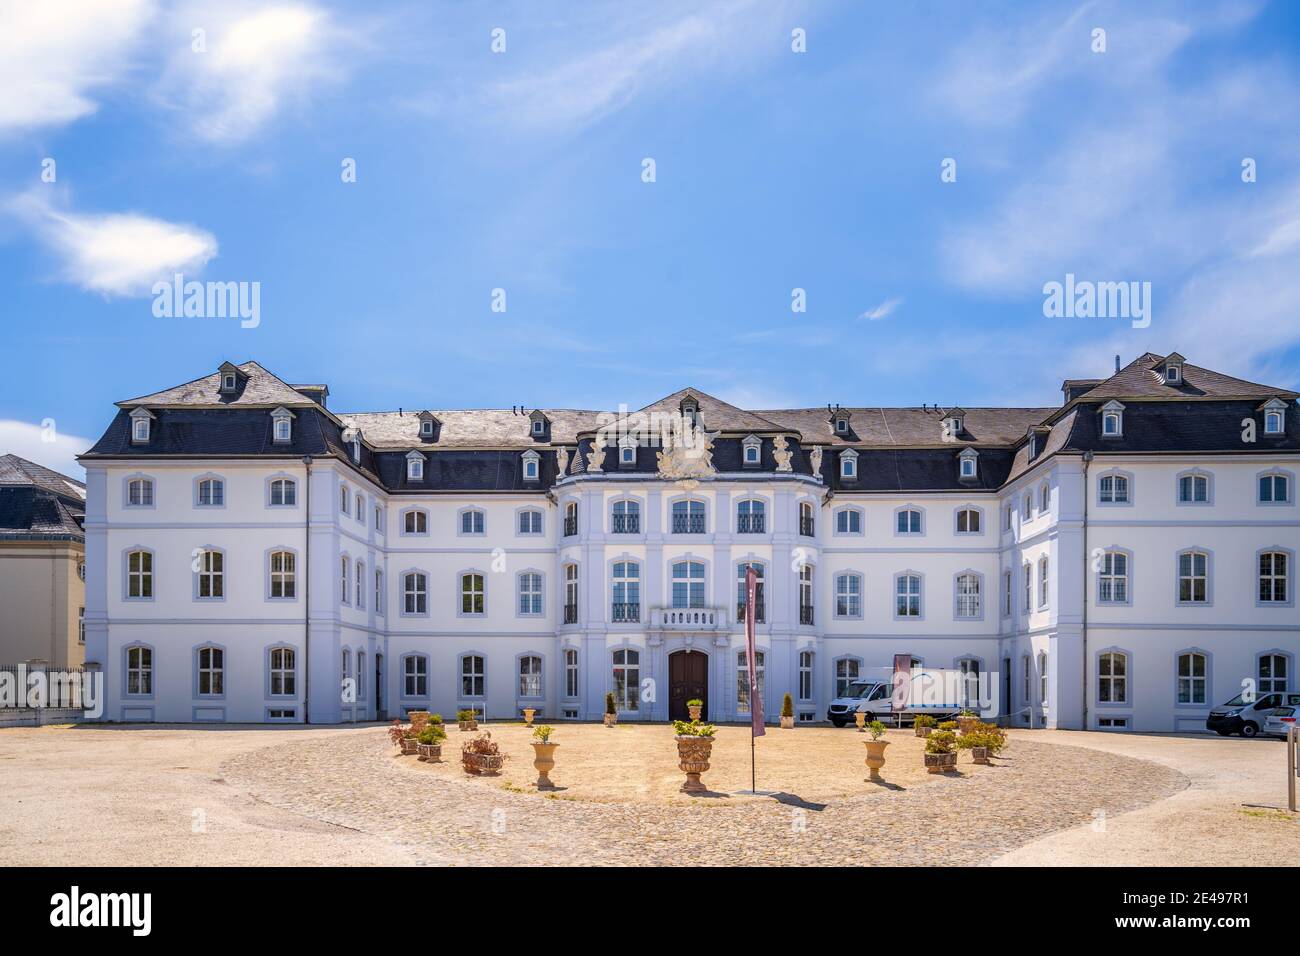 Castle Engers, Neuwied, Rheinland Pfalz, germany Stock Photo